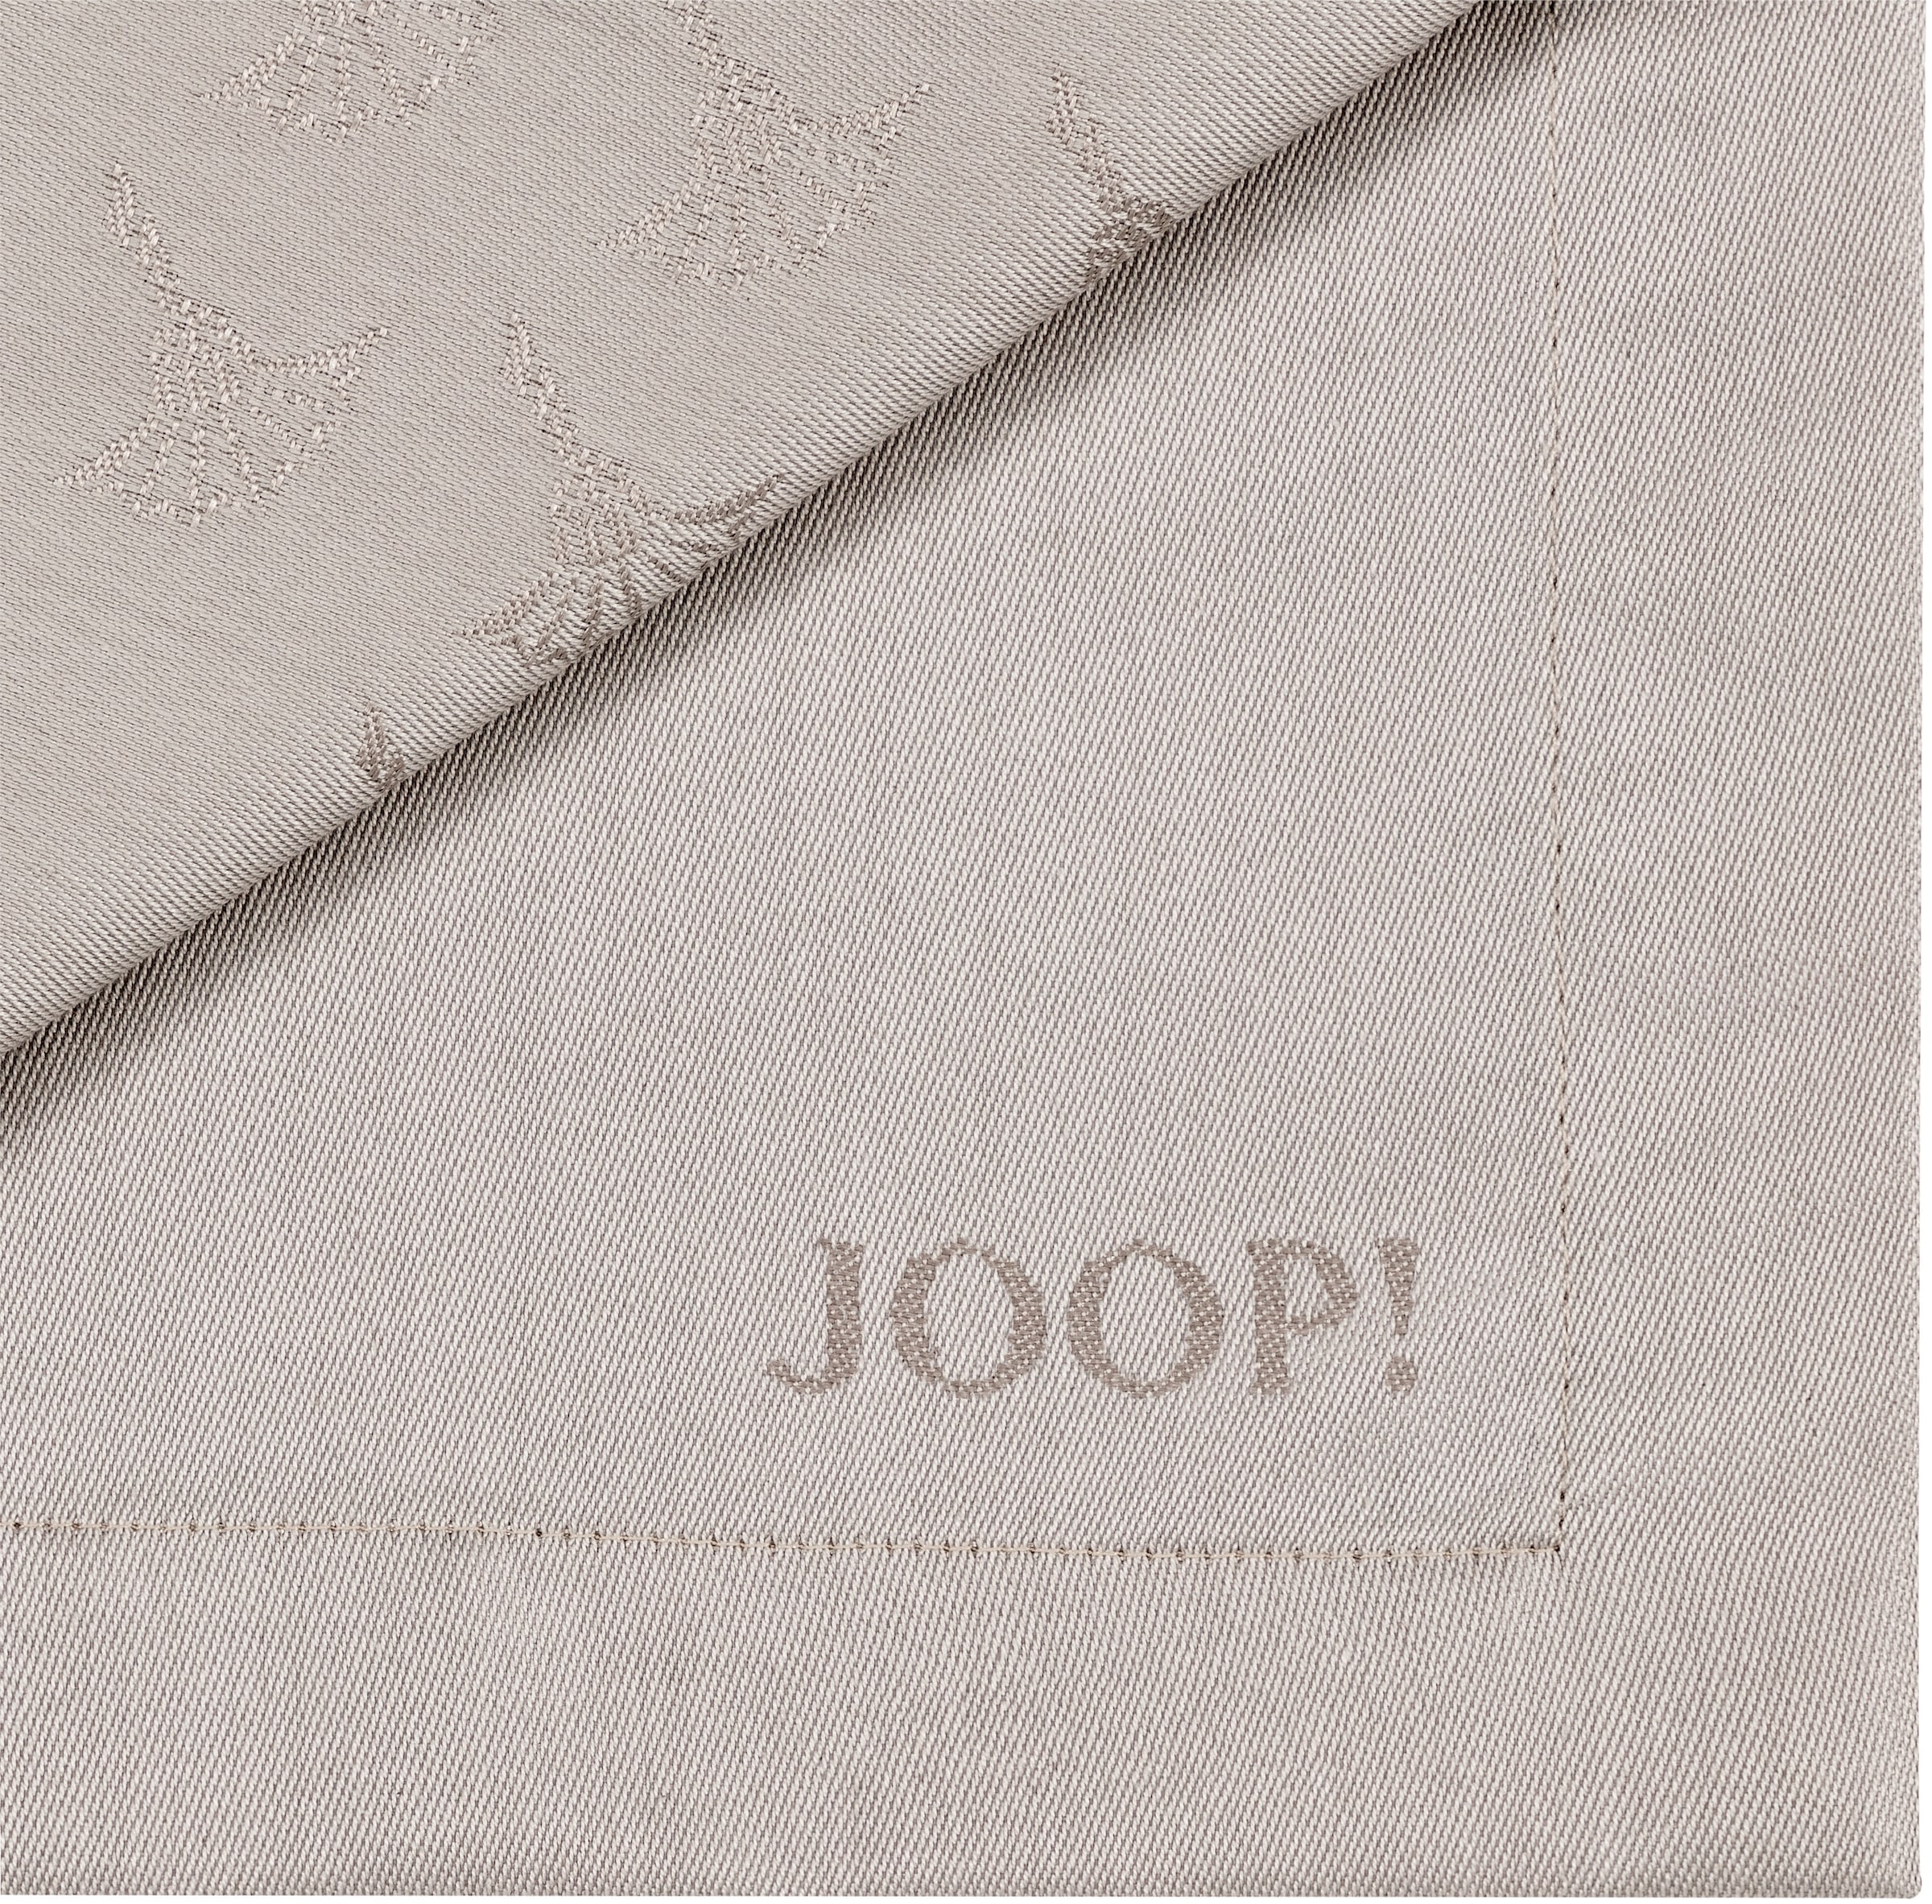 JOOP! Stoffserviette »FADED CORNFLOWER«, (Set, 2 St.), aus Jacquard-Gewebe gefertigt mit Kornblumen-Verlauf